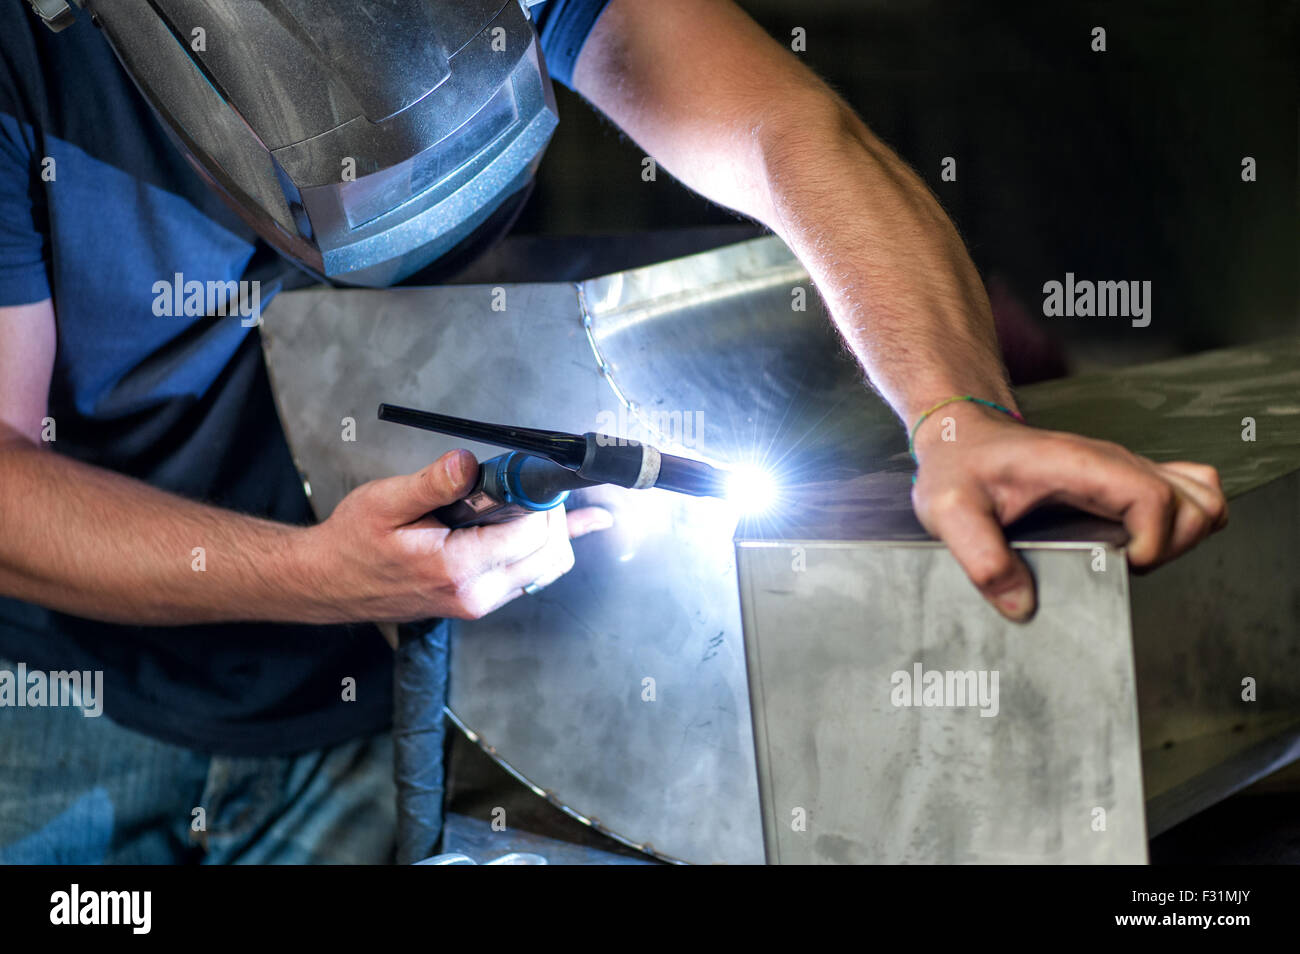 Soudage de métallurgistes deux composants métalliques avec un soudeur industriel dans un atelier de l'angle, vue en gros plan de ses mains Banque D'Images